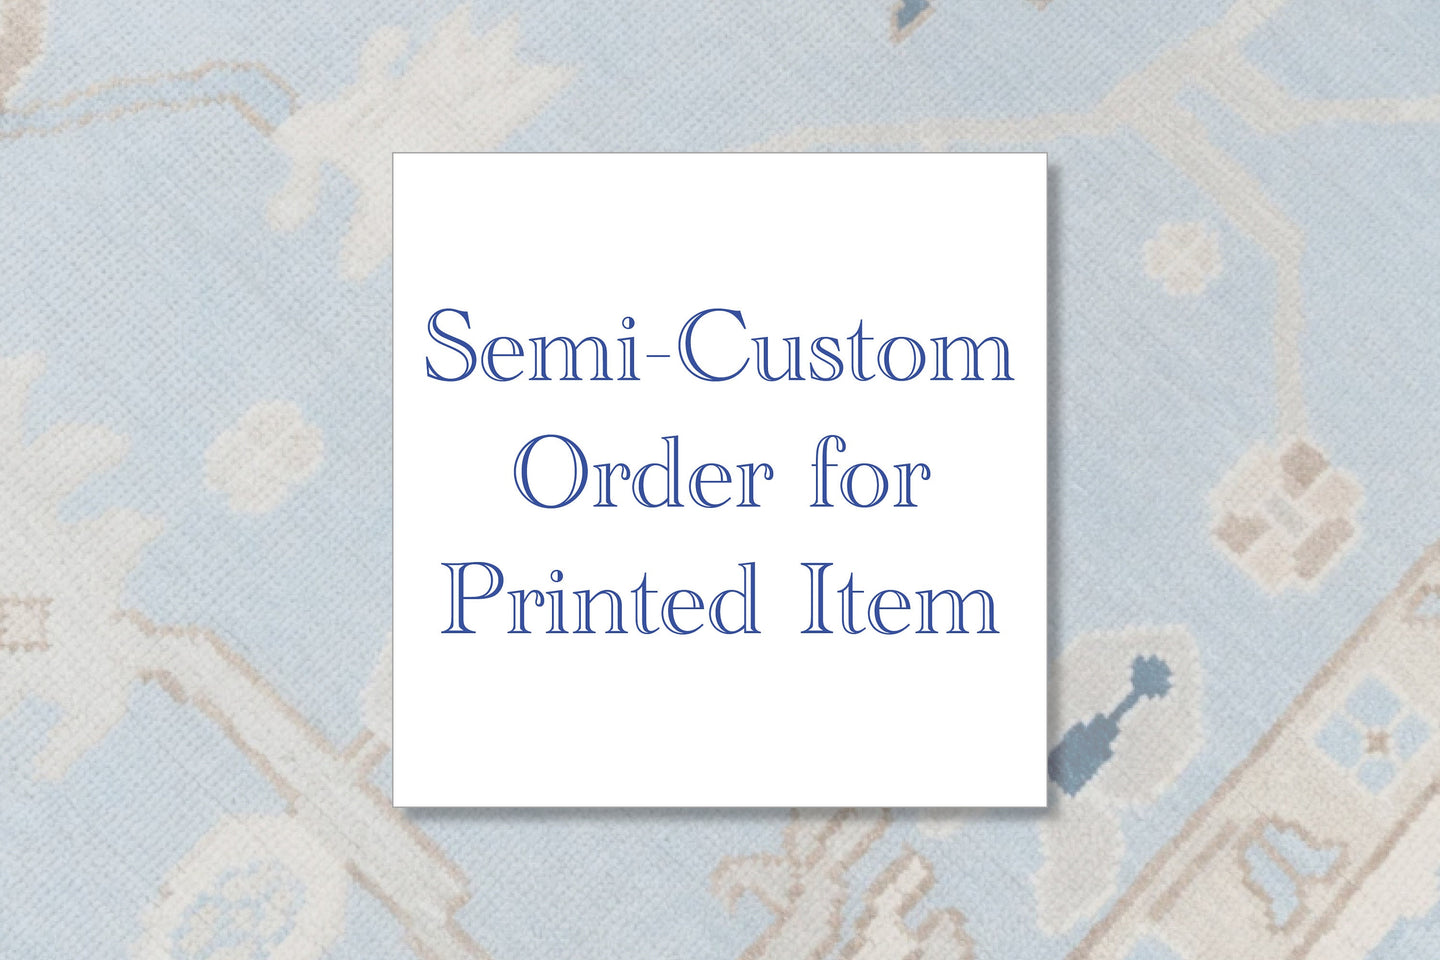 Semi-Custom Order For Printed Item